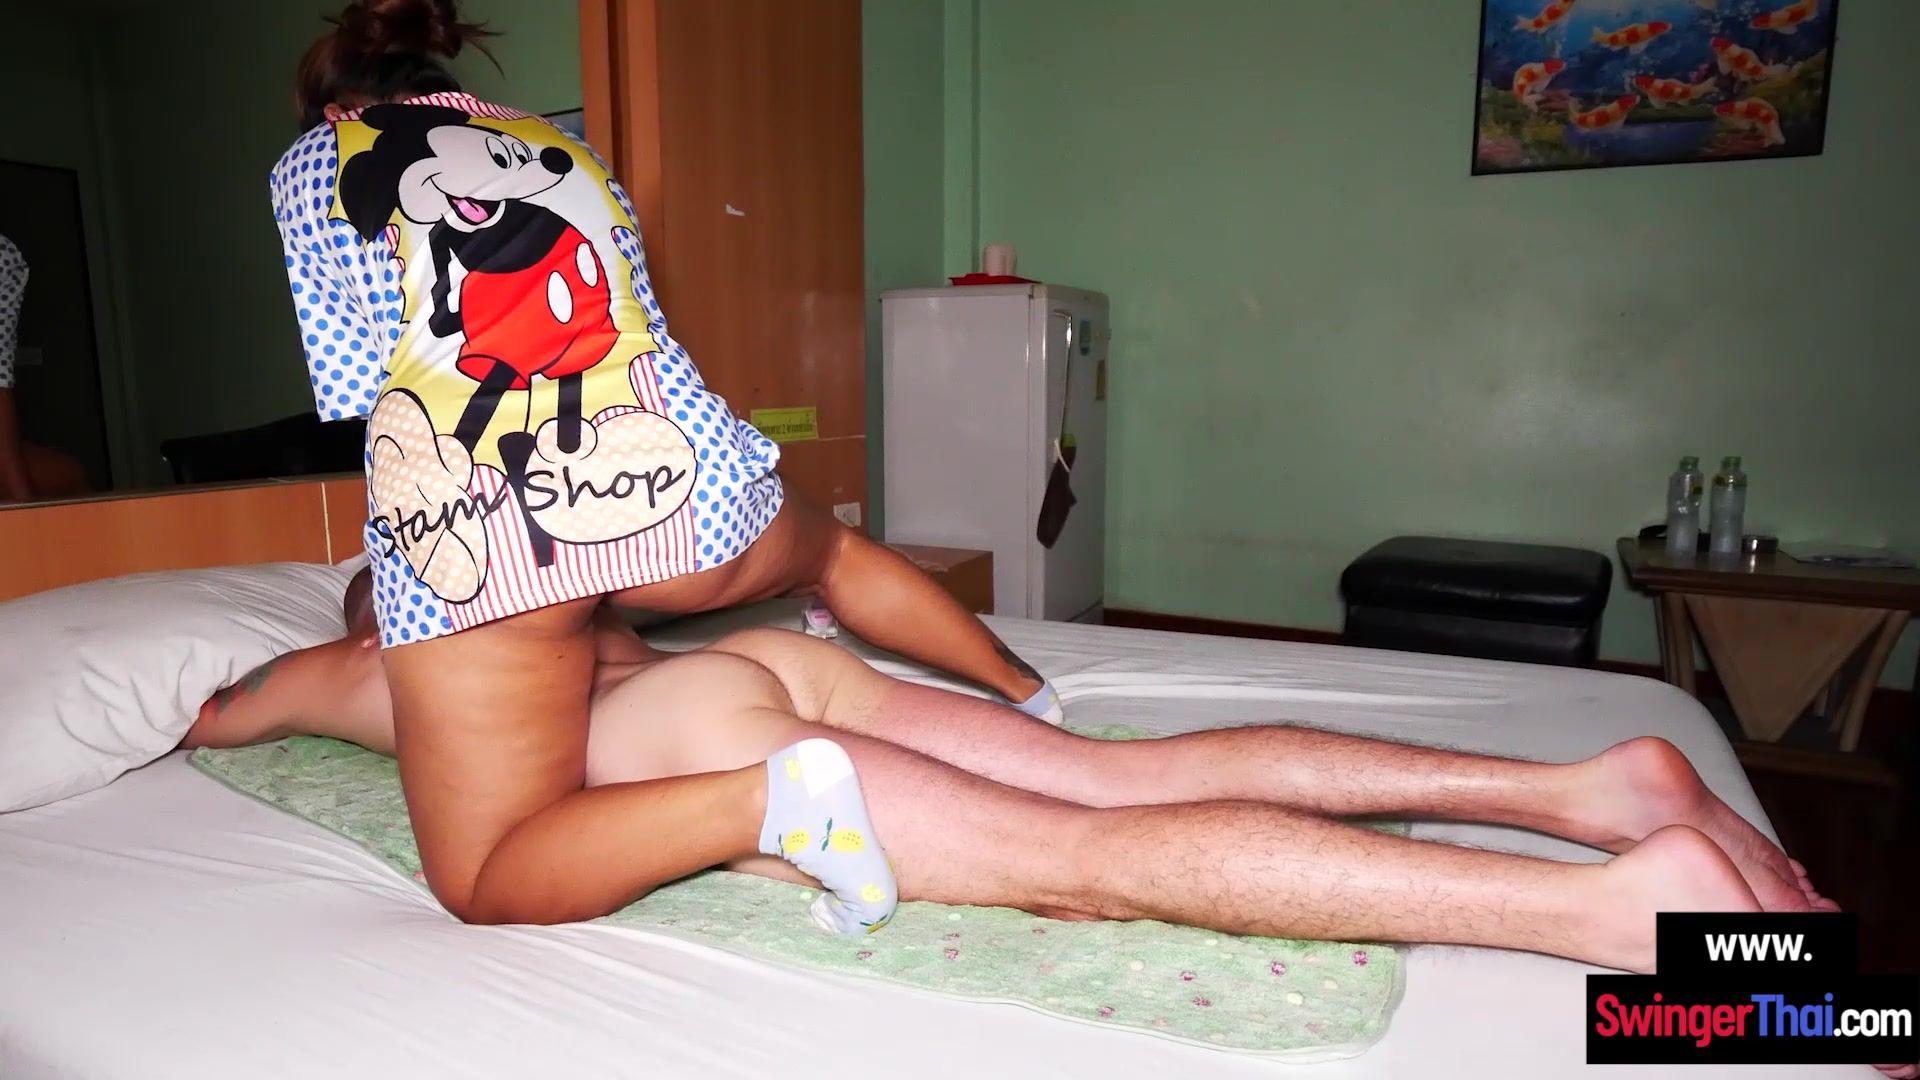 BBW Thai amateur MILF hot sex massage image picture